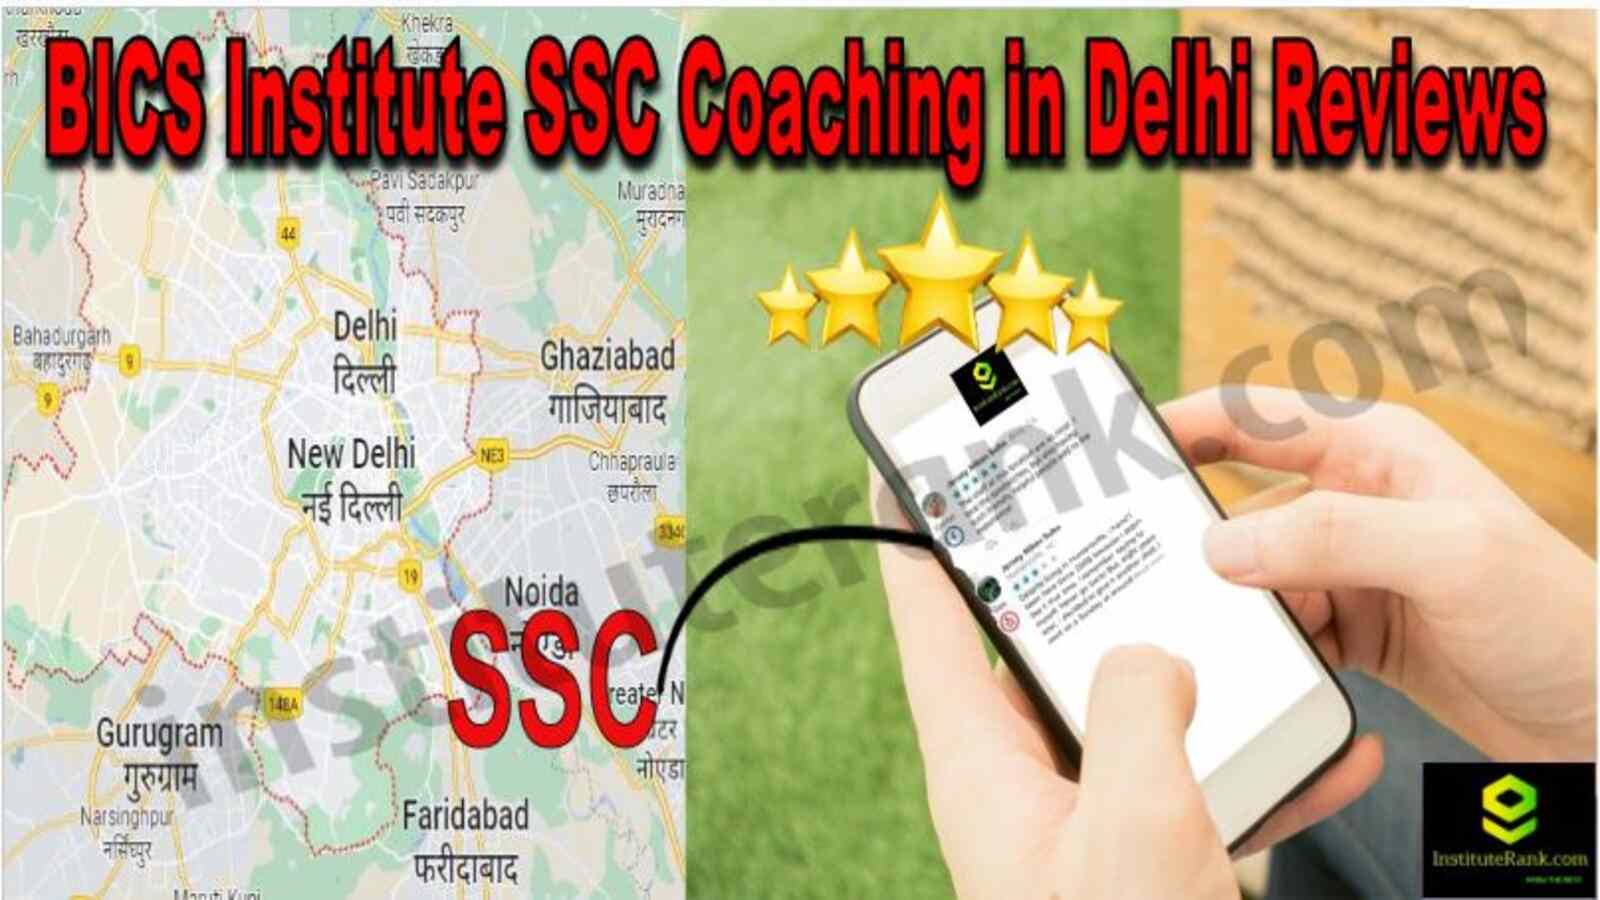 BICS Institute SSC Coaching in Delhi Reviews